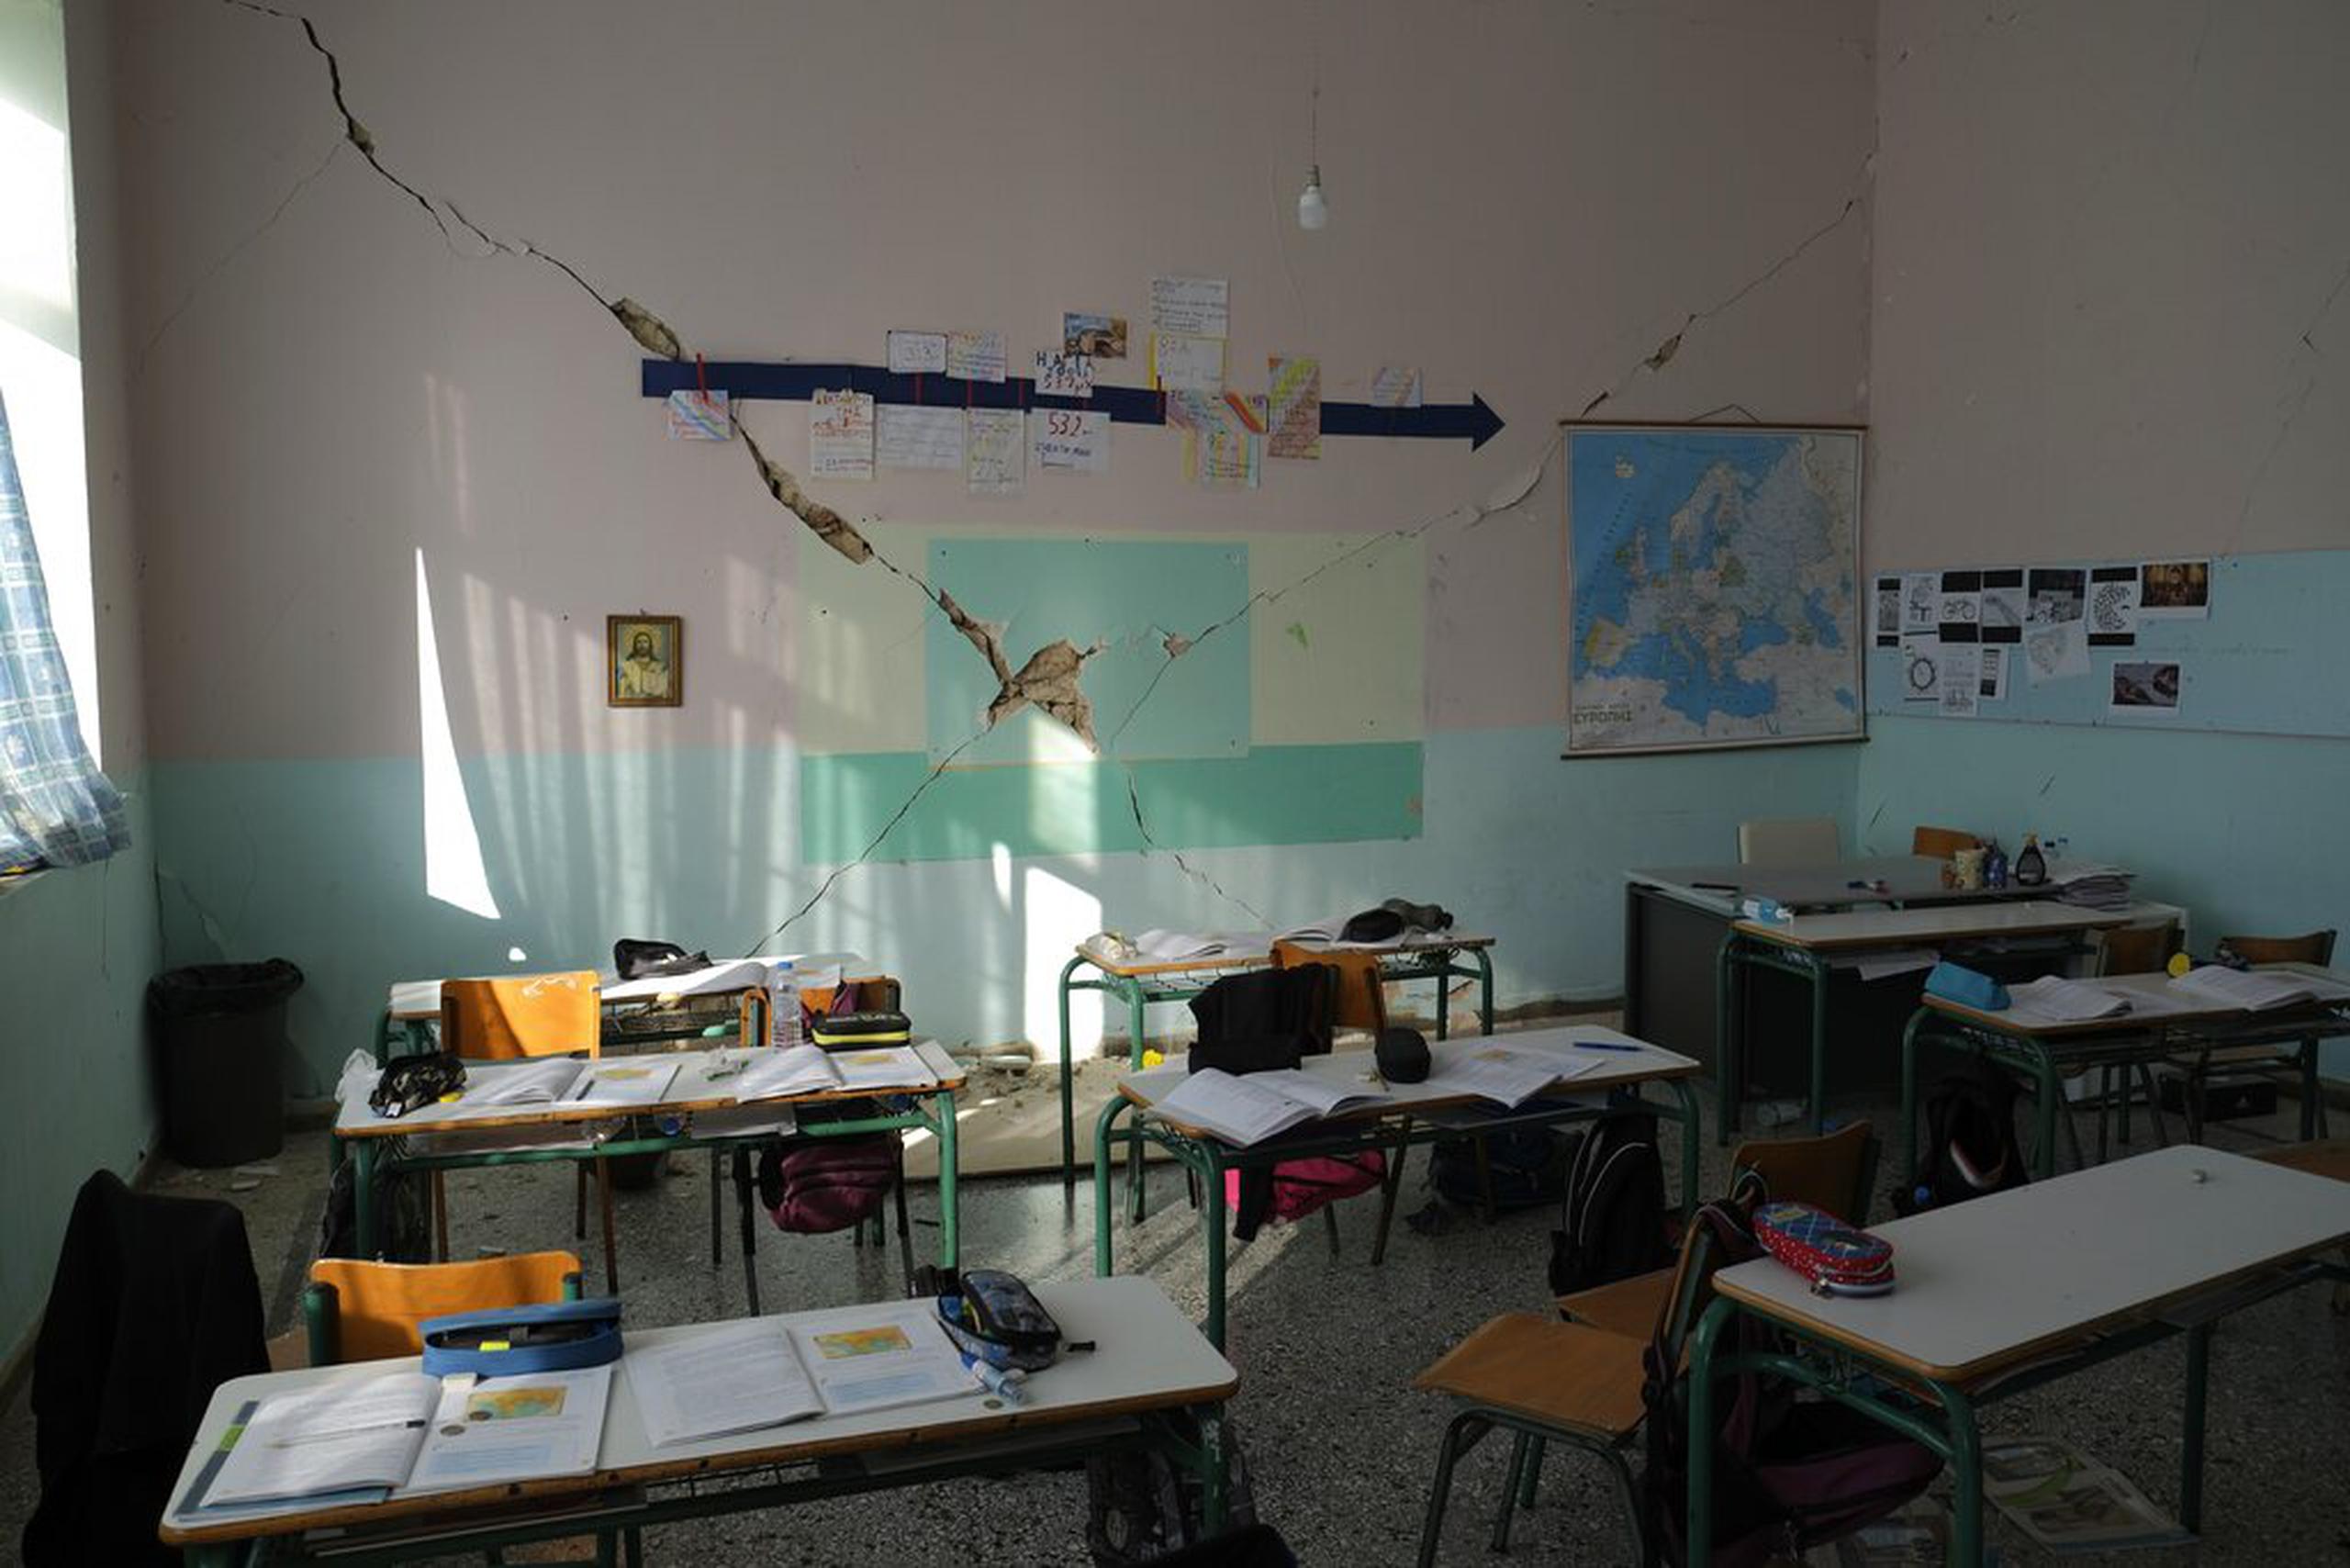 Un salón escolar dañado en Creta por los sismos el 28 de septiembre de 2021.